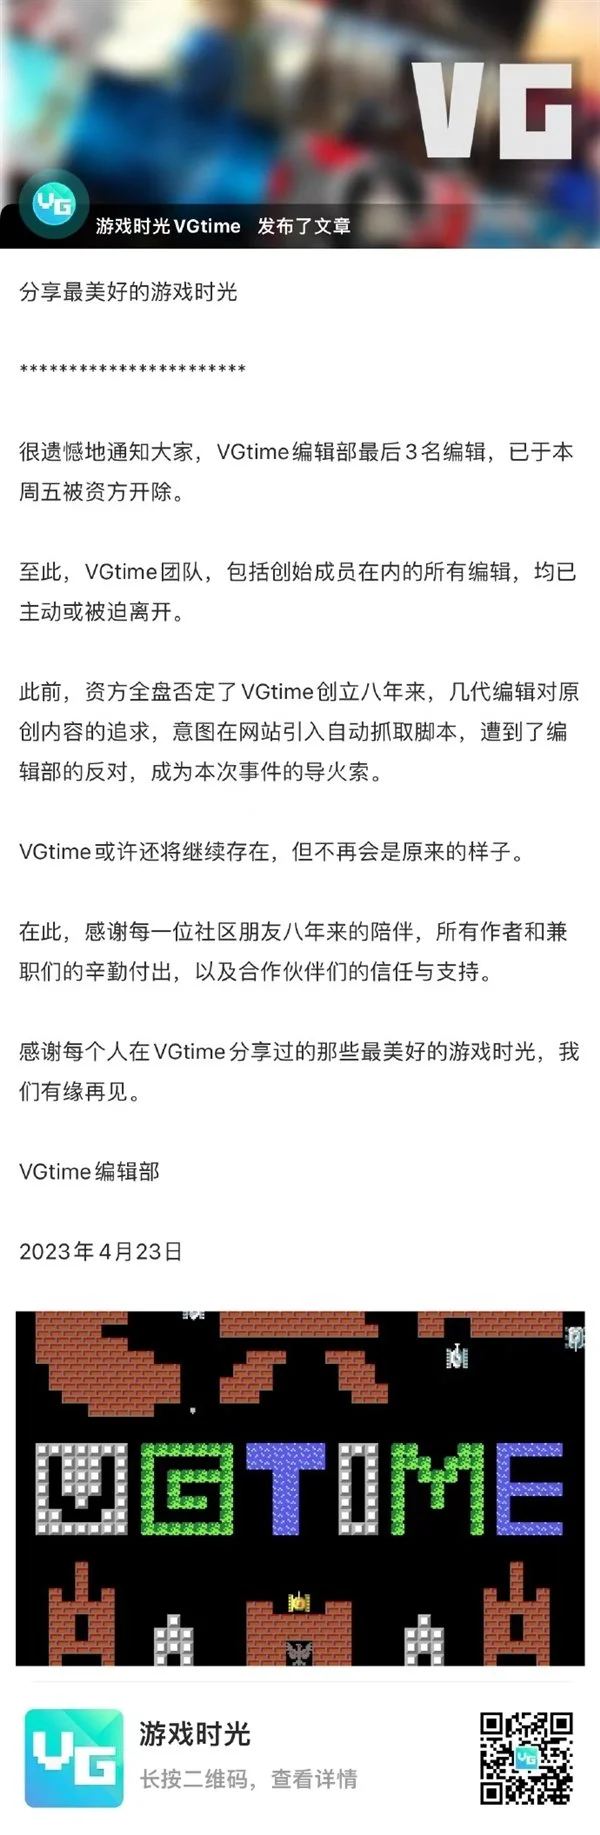 知名游戏网站VGtime最后3名编辑被开除：与资方冲突 不同意脚本取代原创